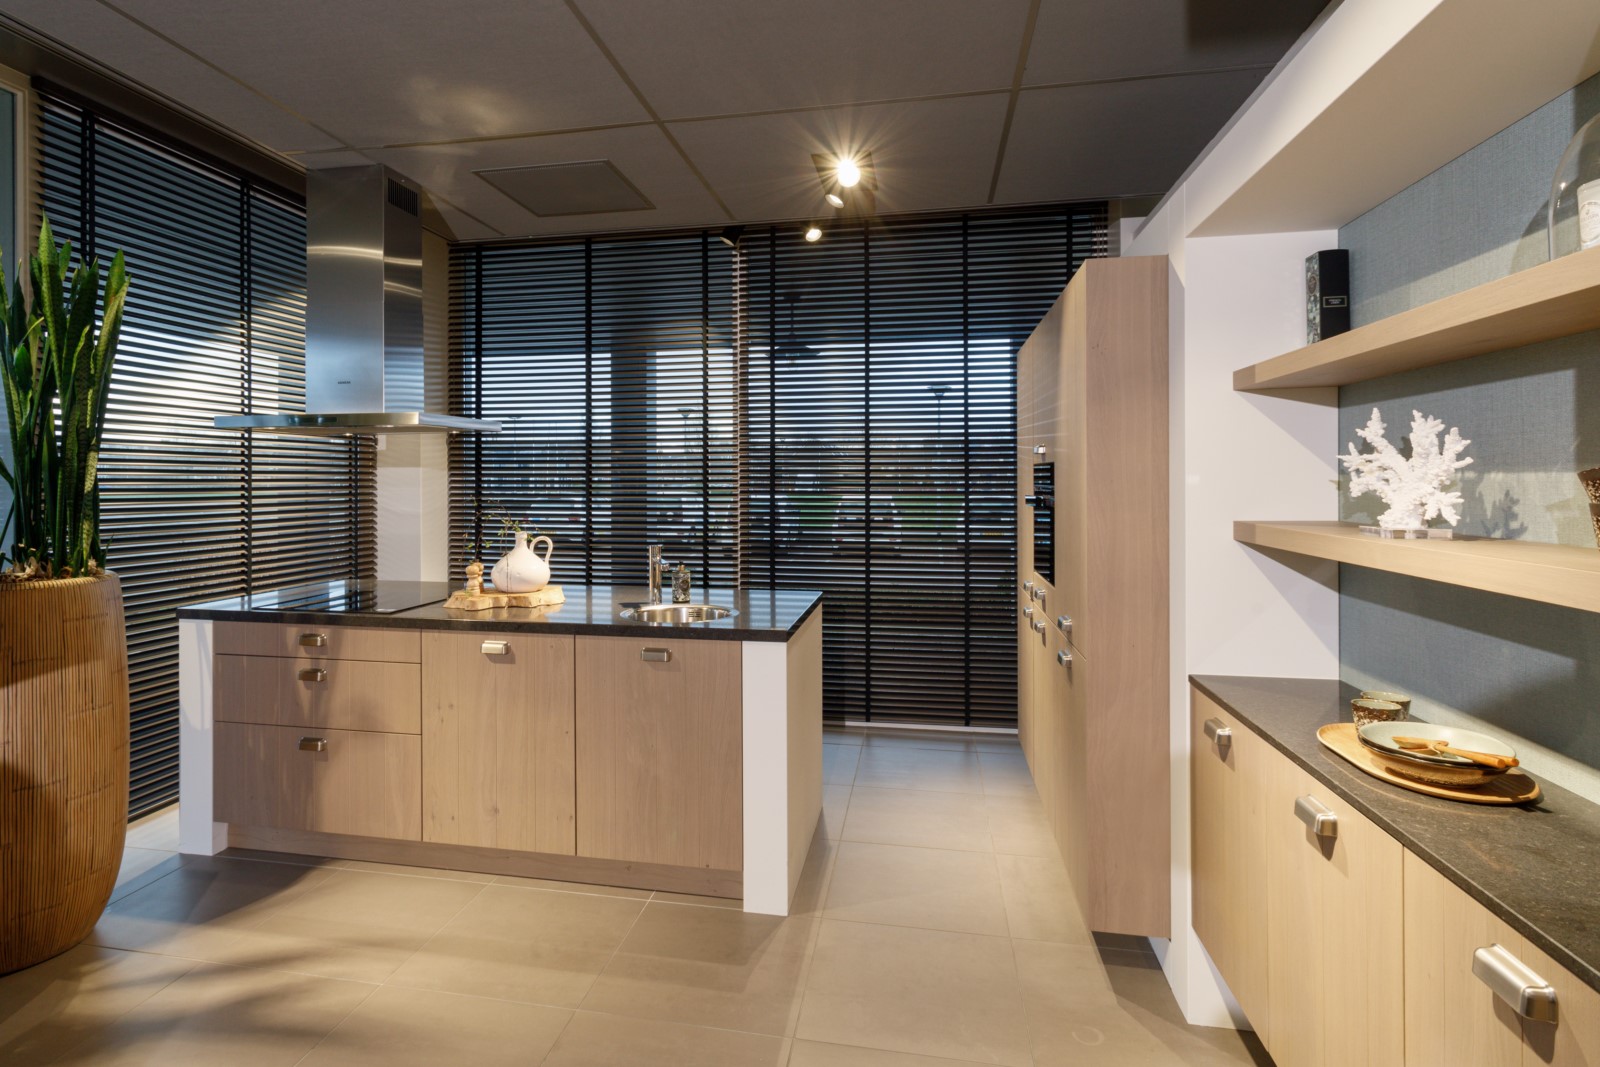 Foto : Keller Nijenborgh met keukenfronten in grijs gebeitst fineer